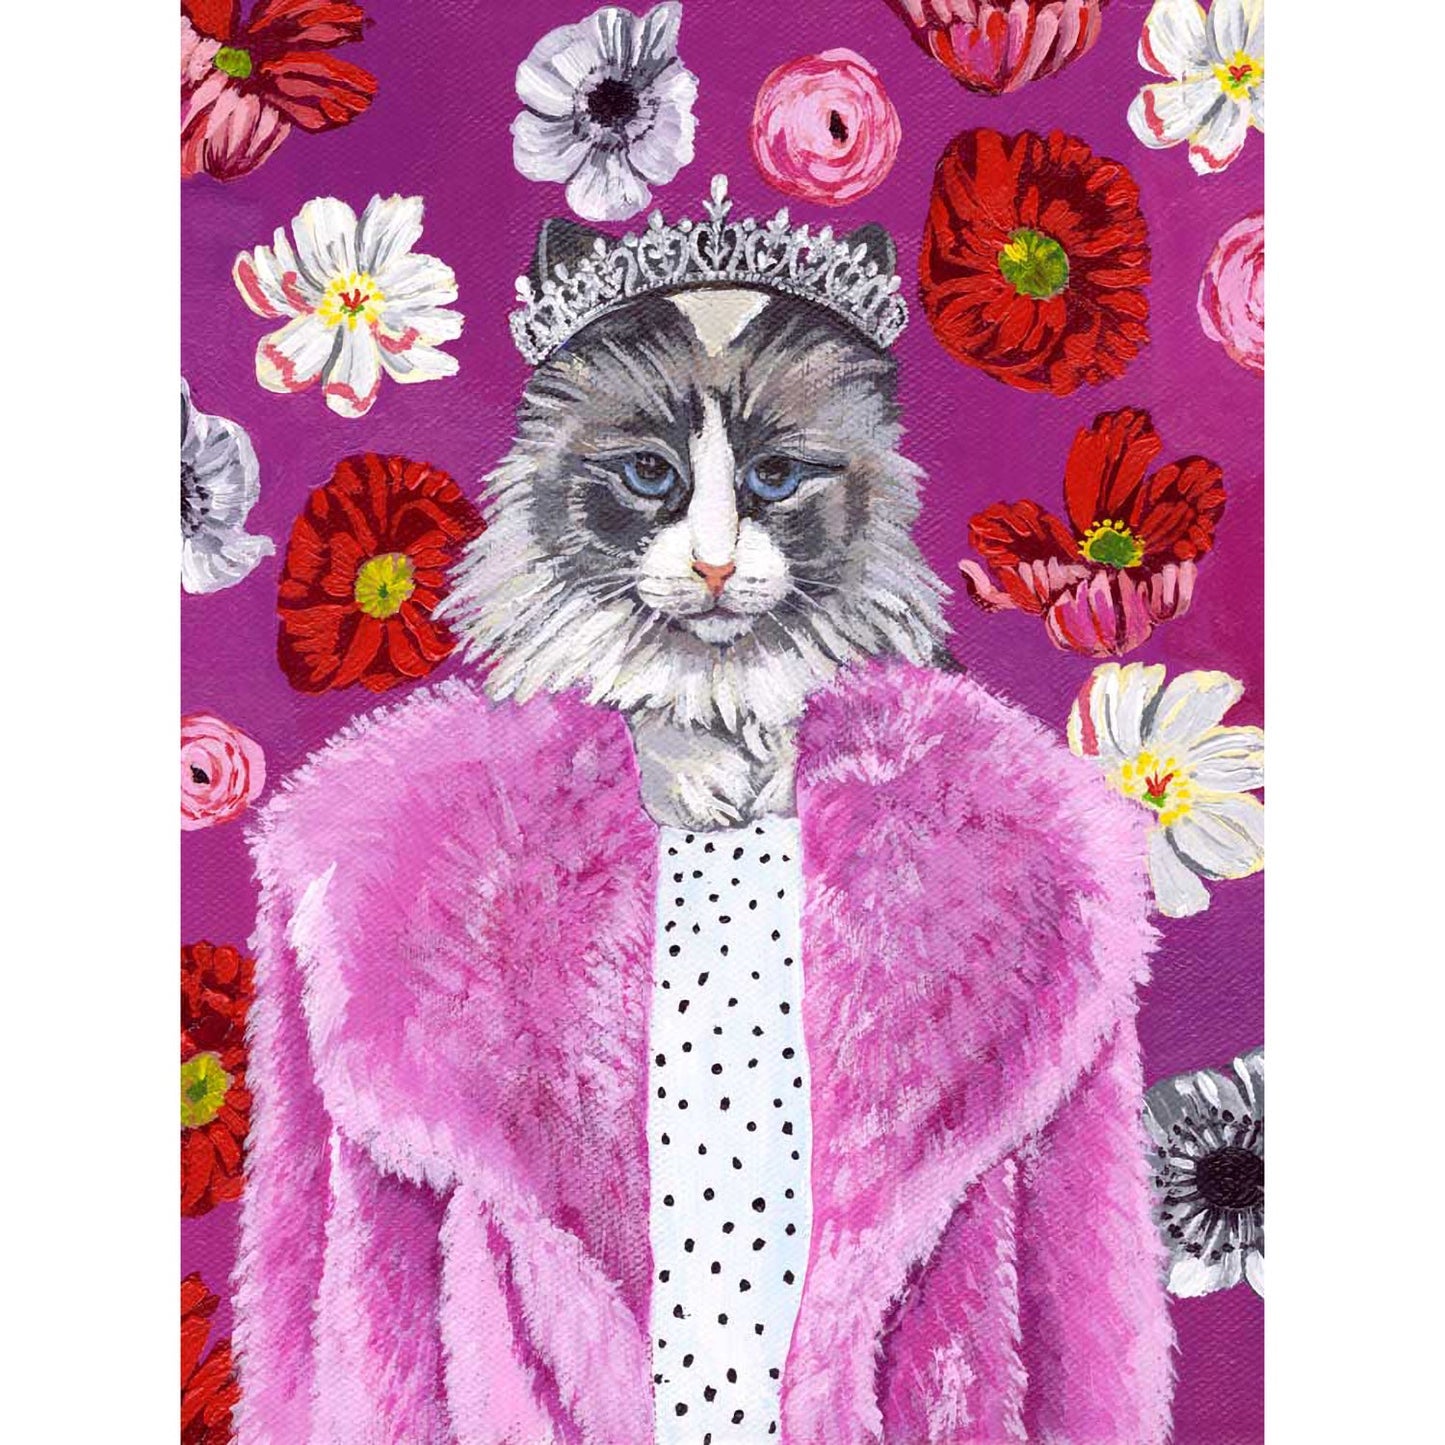 Queen Kitty Canvas Wall Art